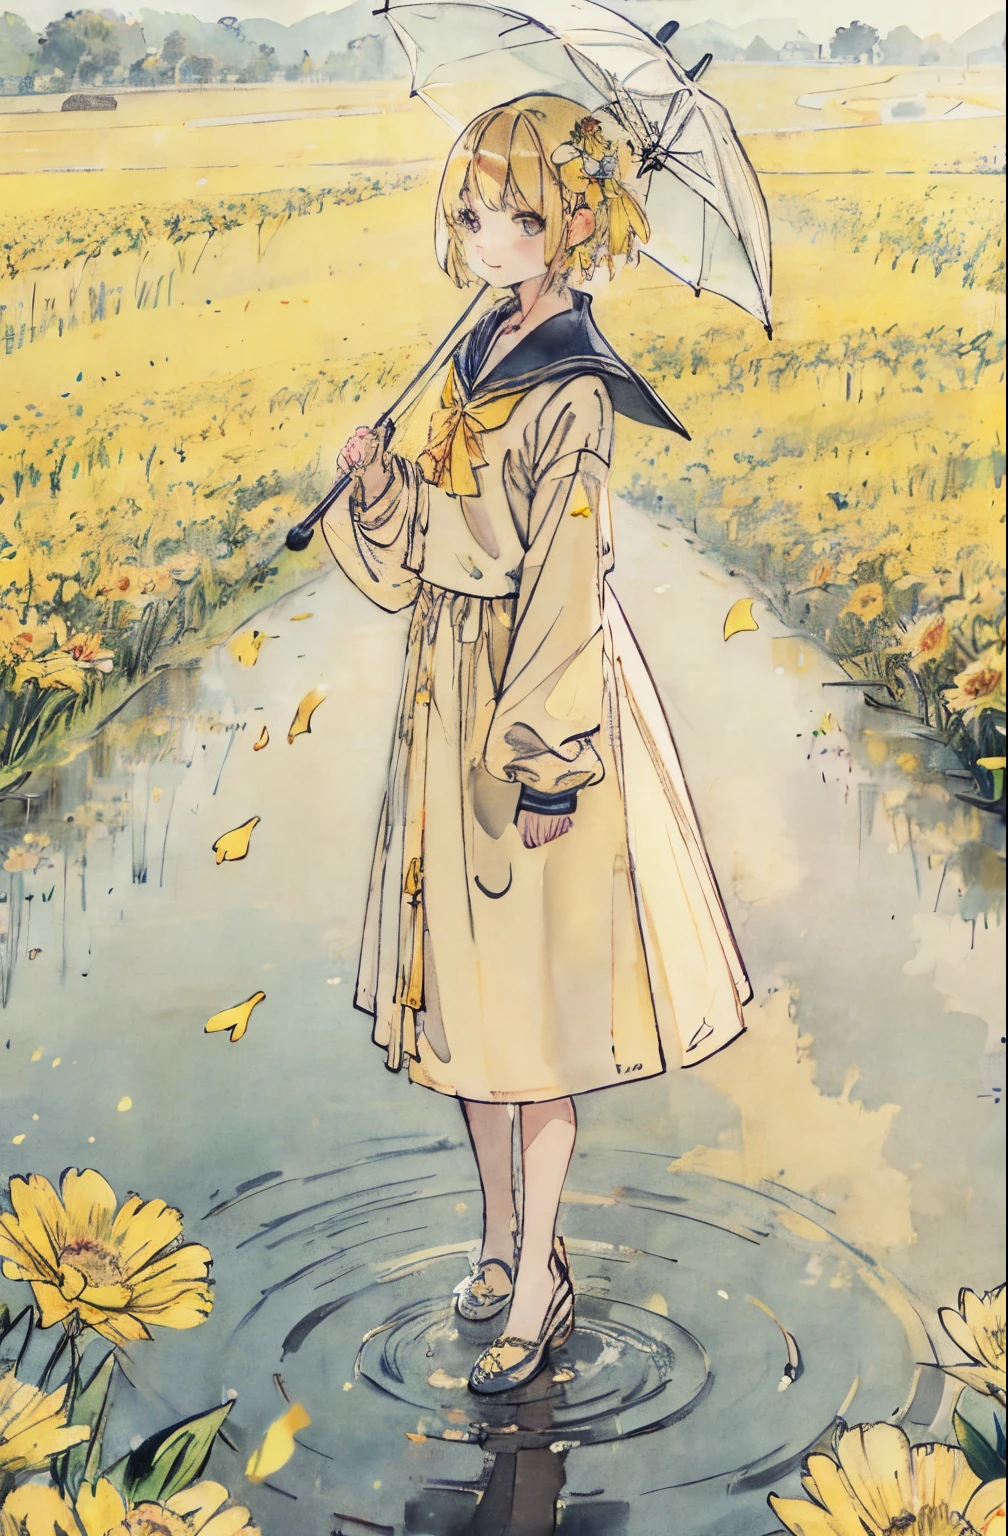 Flor amarela、cabelo amarelo、campo de flores、A chuva、guarda-chuvas、poça、Refletores、um terno de marinheiro